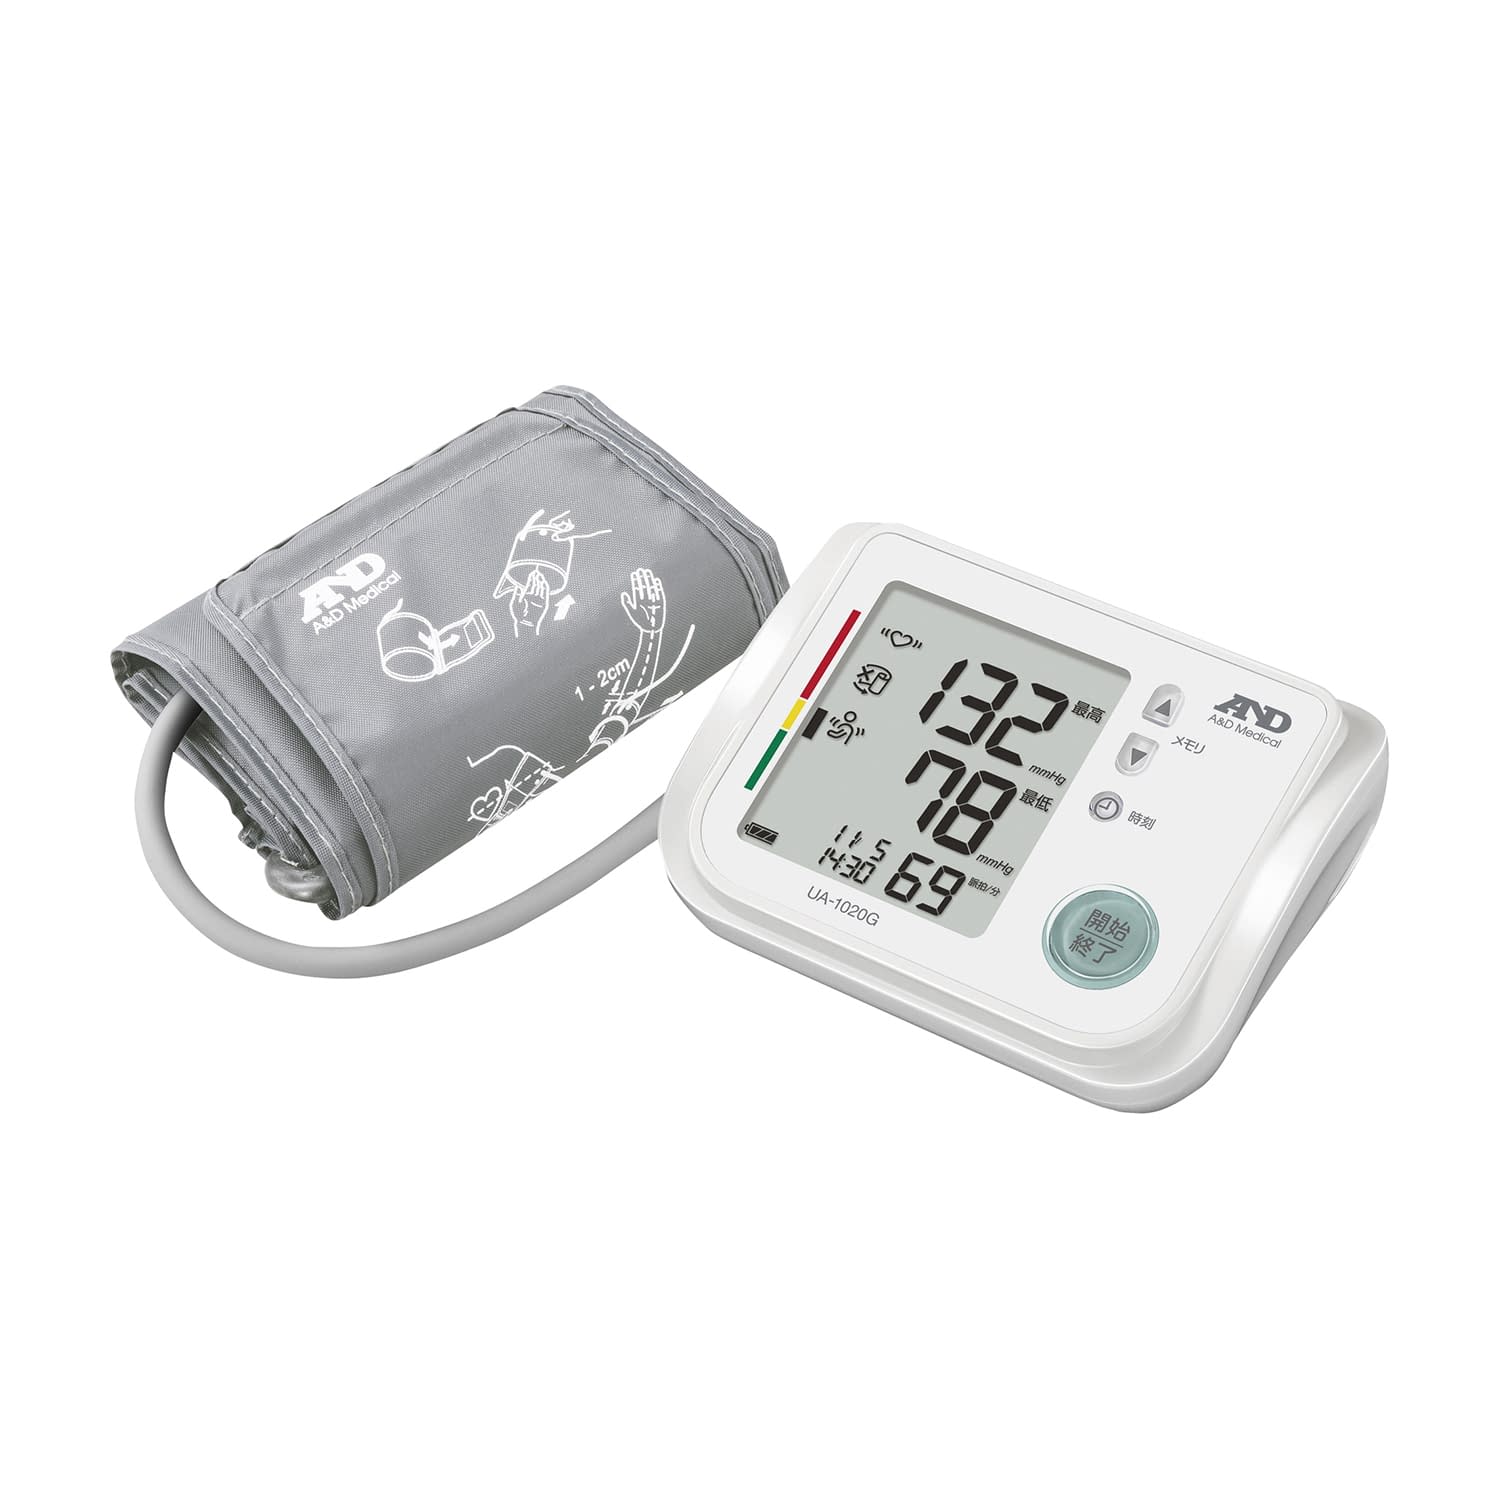 デジタル血圧計(上腕式) UA-1020GUA-1020G(24-8889-00)【エー・アンド・デイ】(販売単位:1)